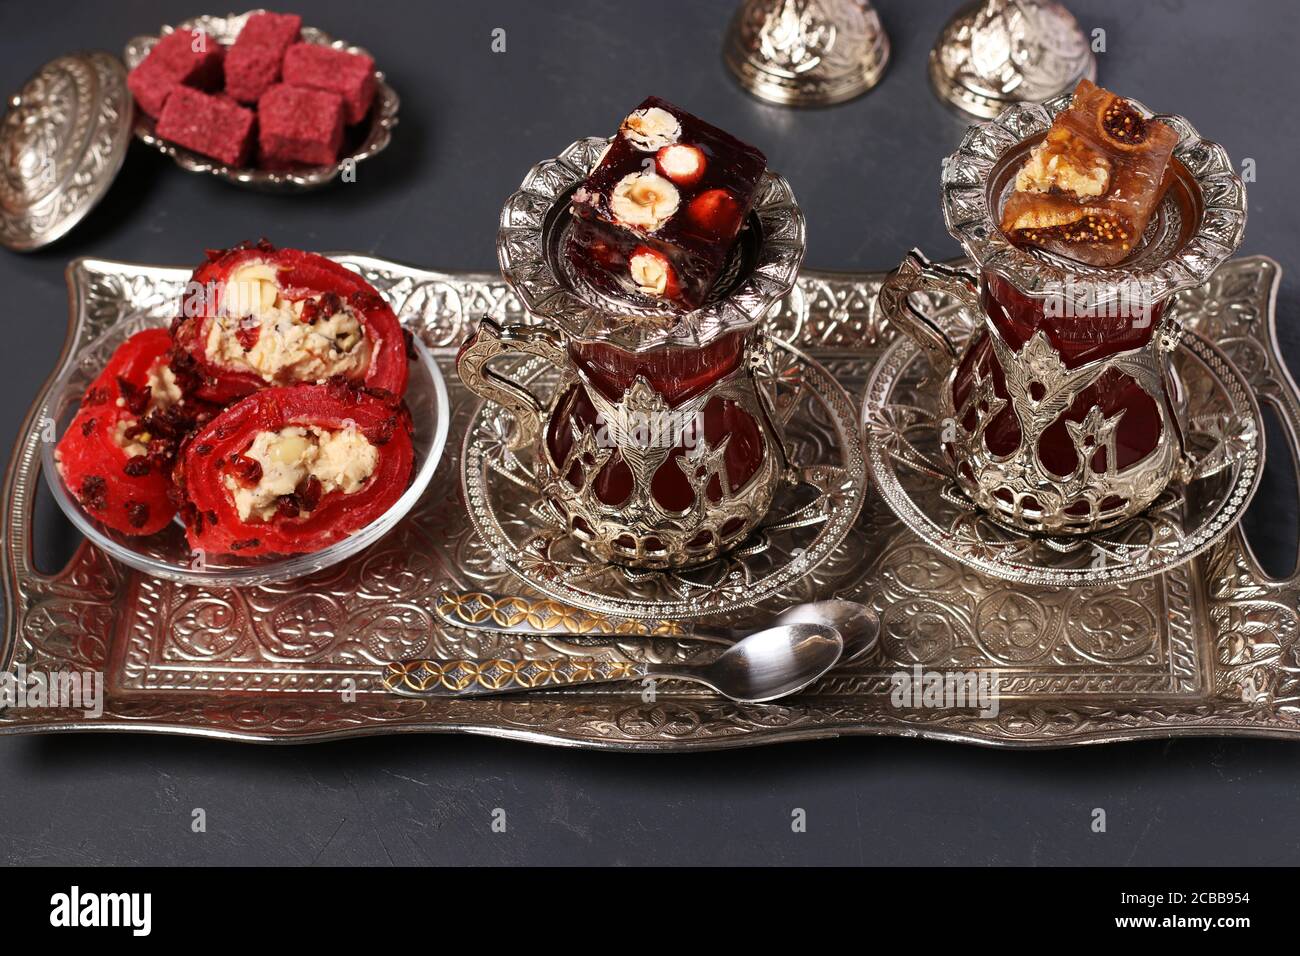 Armuds turcs avec thé et bonbons sur plateau métallique sur fond sombre, gros plan, format horizontal Banque D'Images